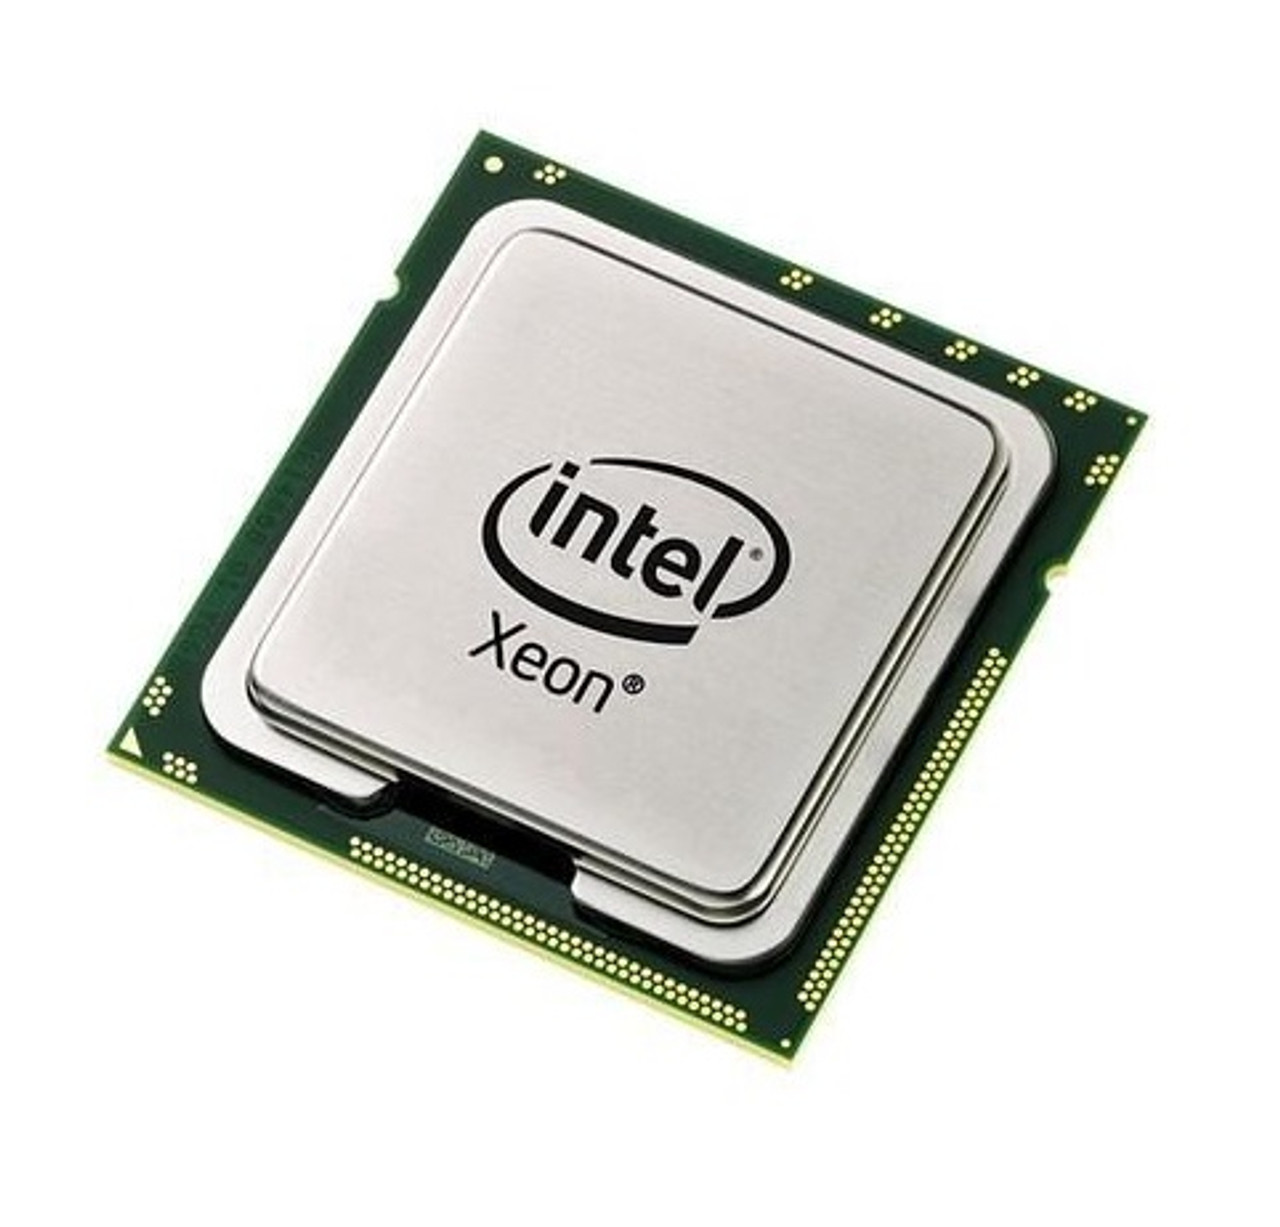 661-4611 - Apple 3.00GHz 1333MHz FSB 8MB L2 Cache Intel Xeon Quad-Core Processor